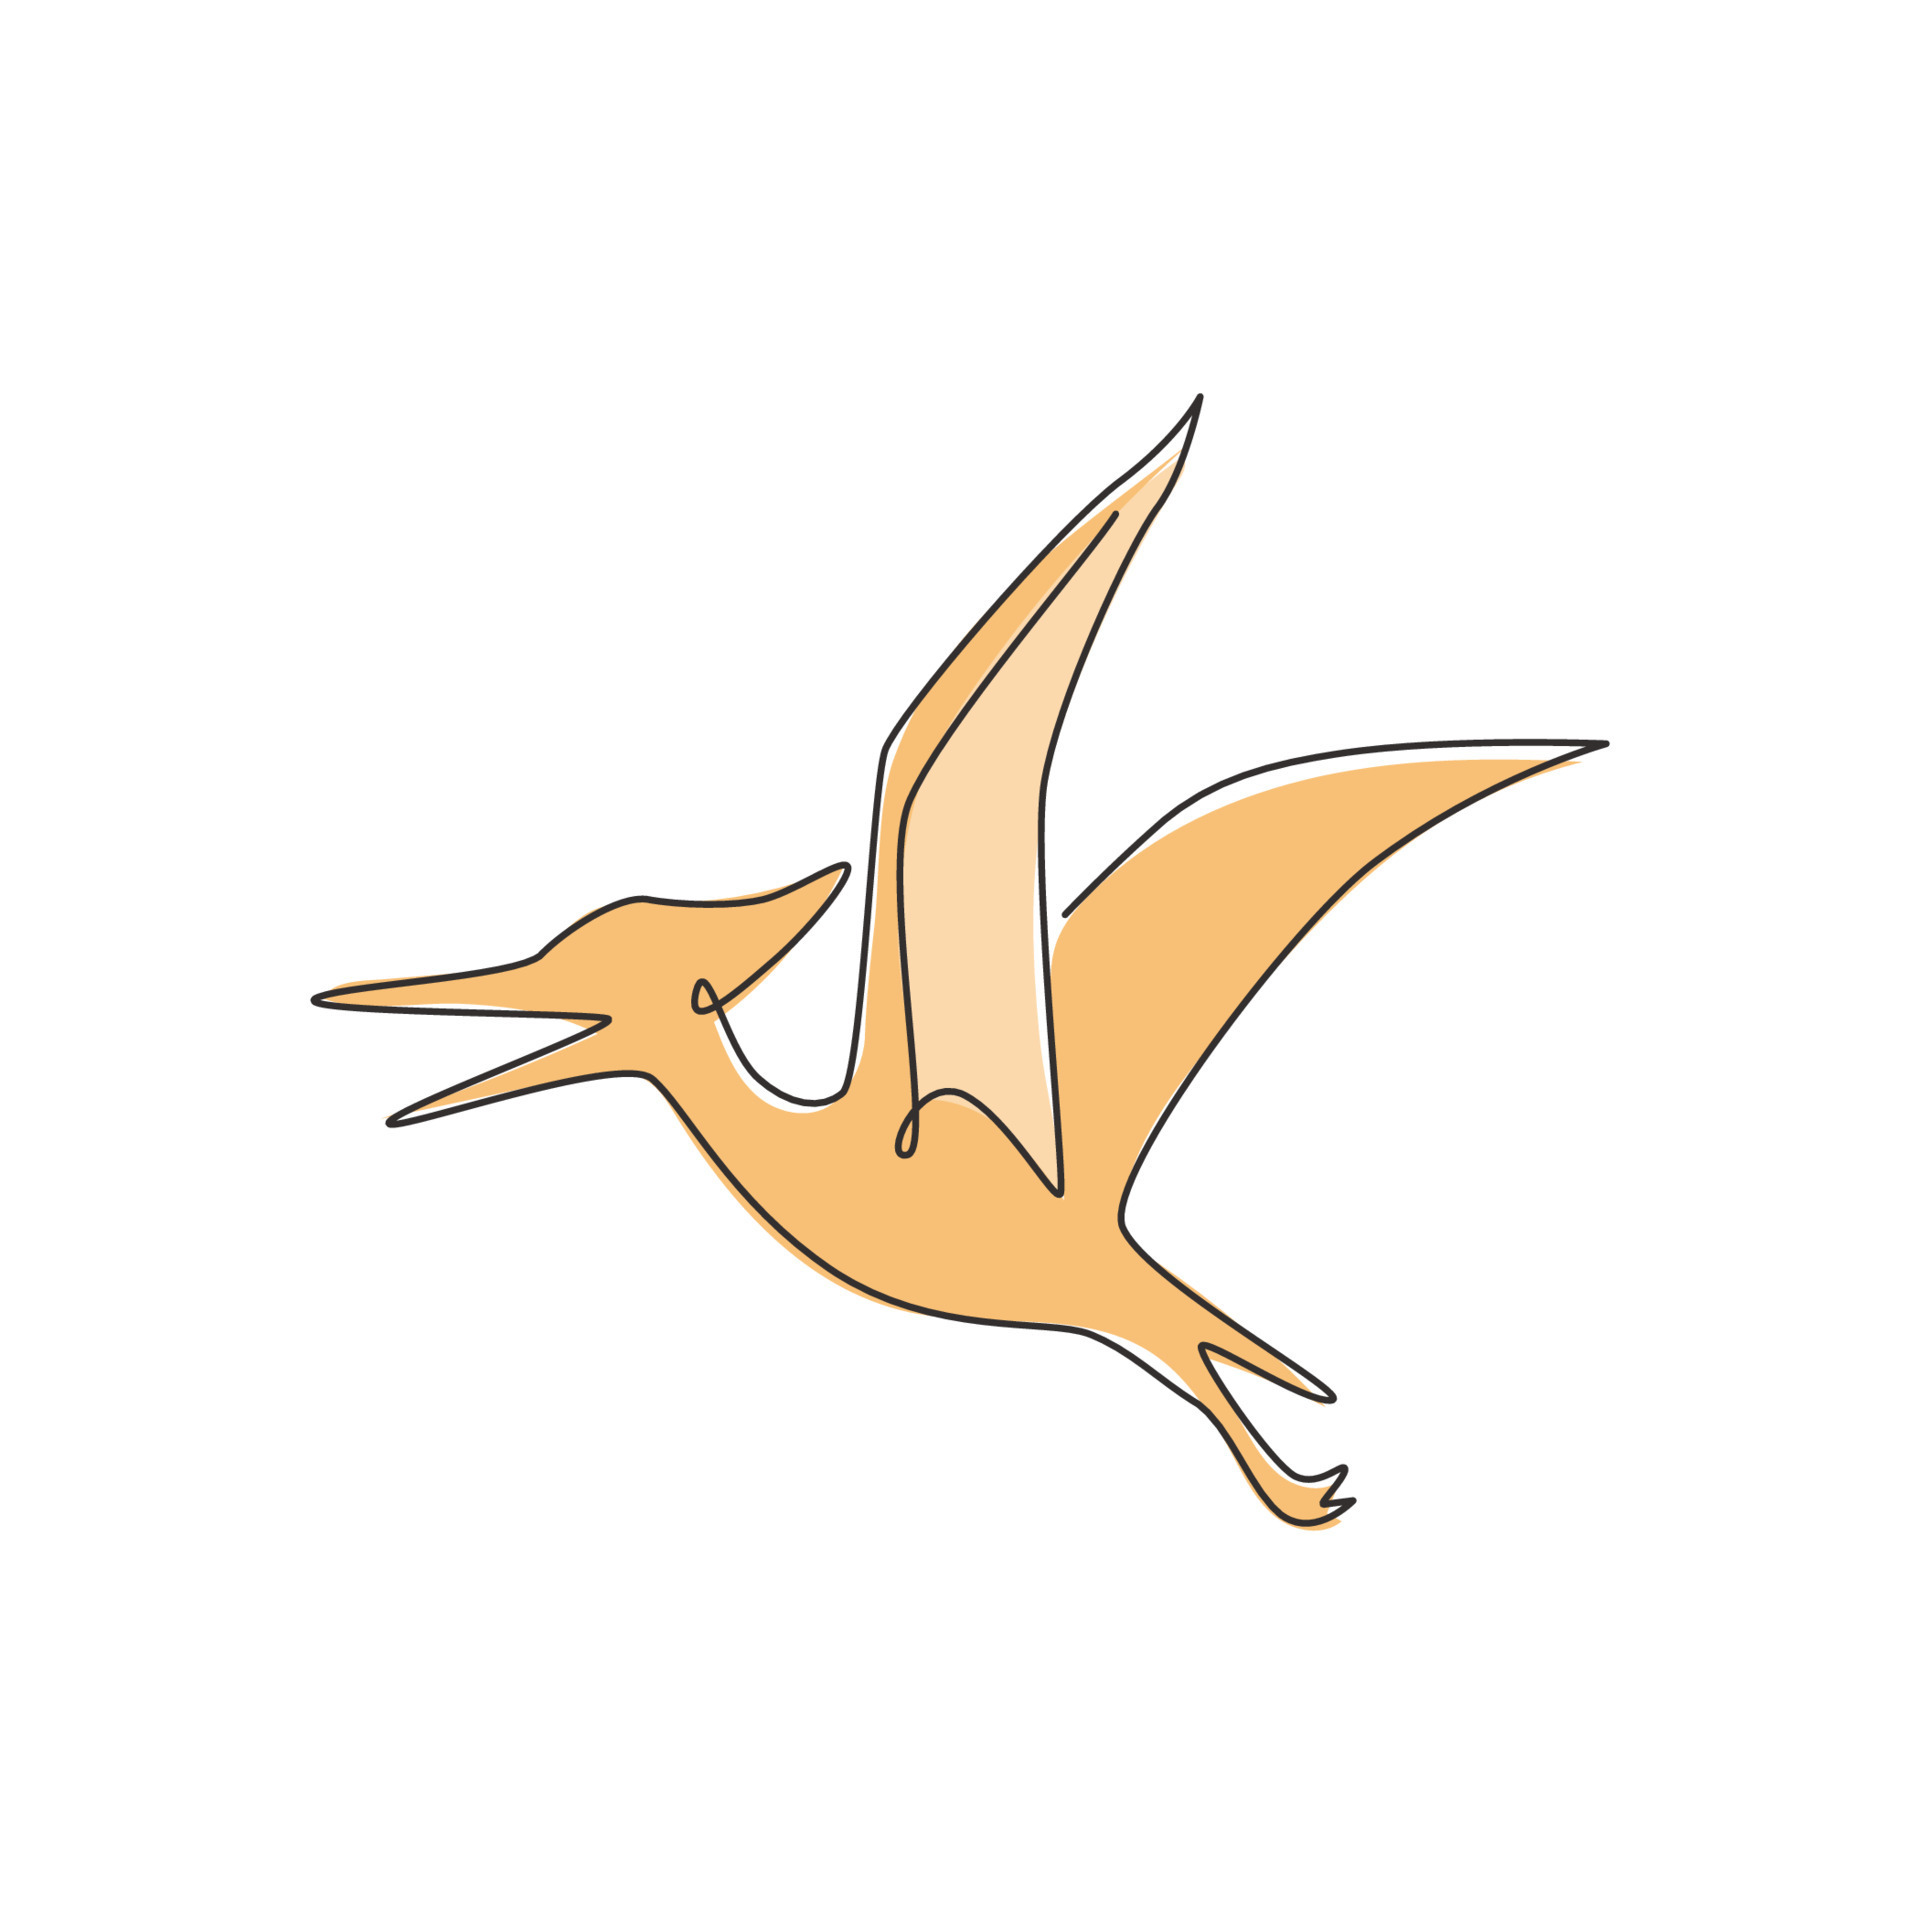 Pterodáctilo - ícones de animais grátis